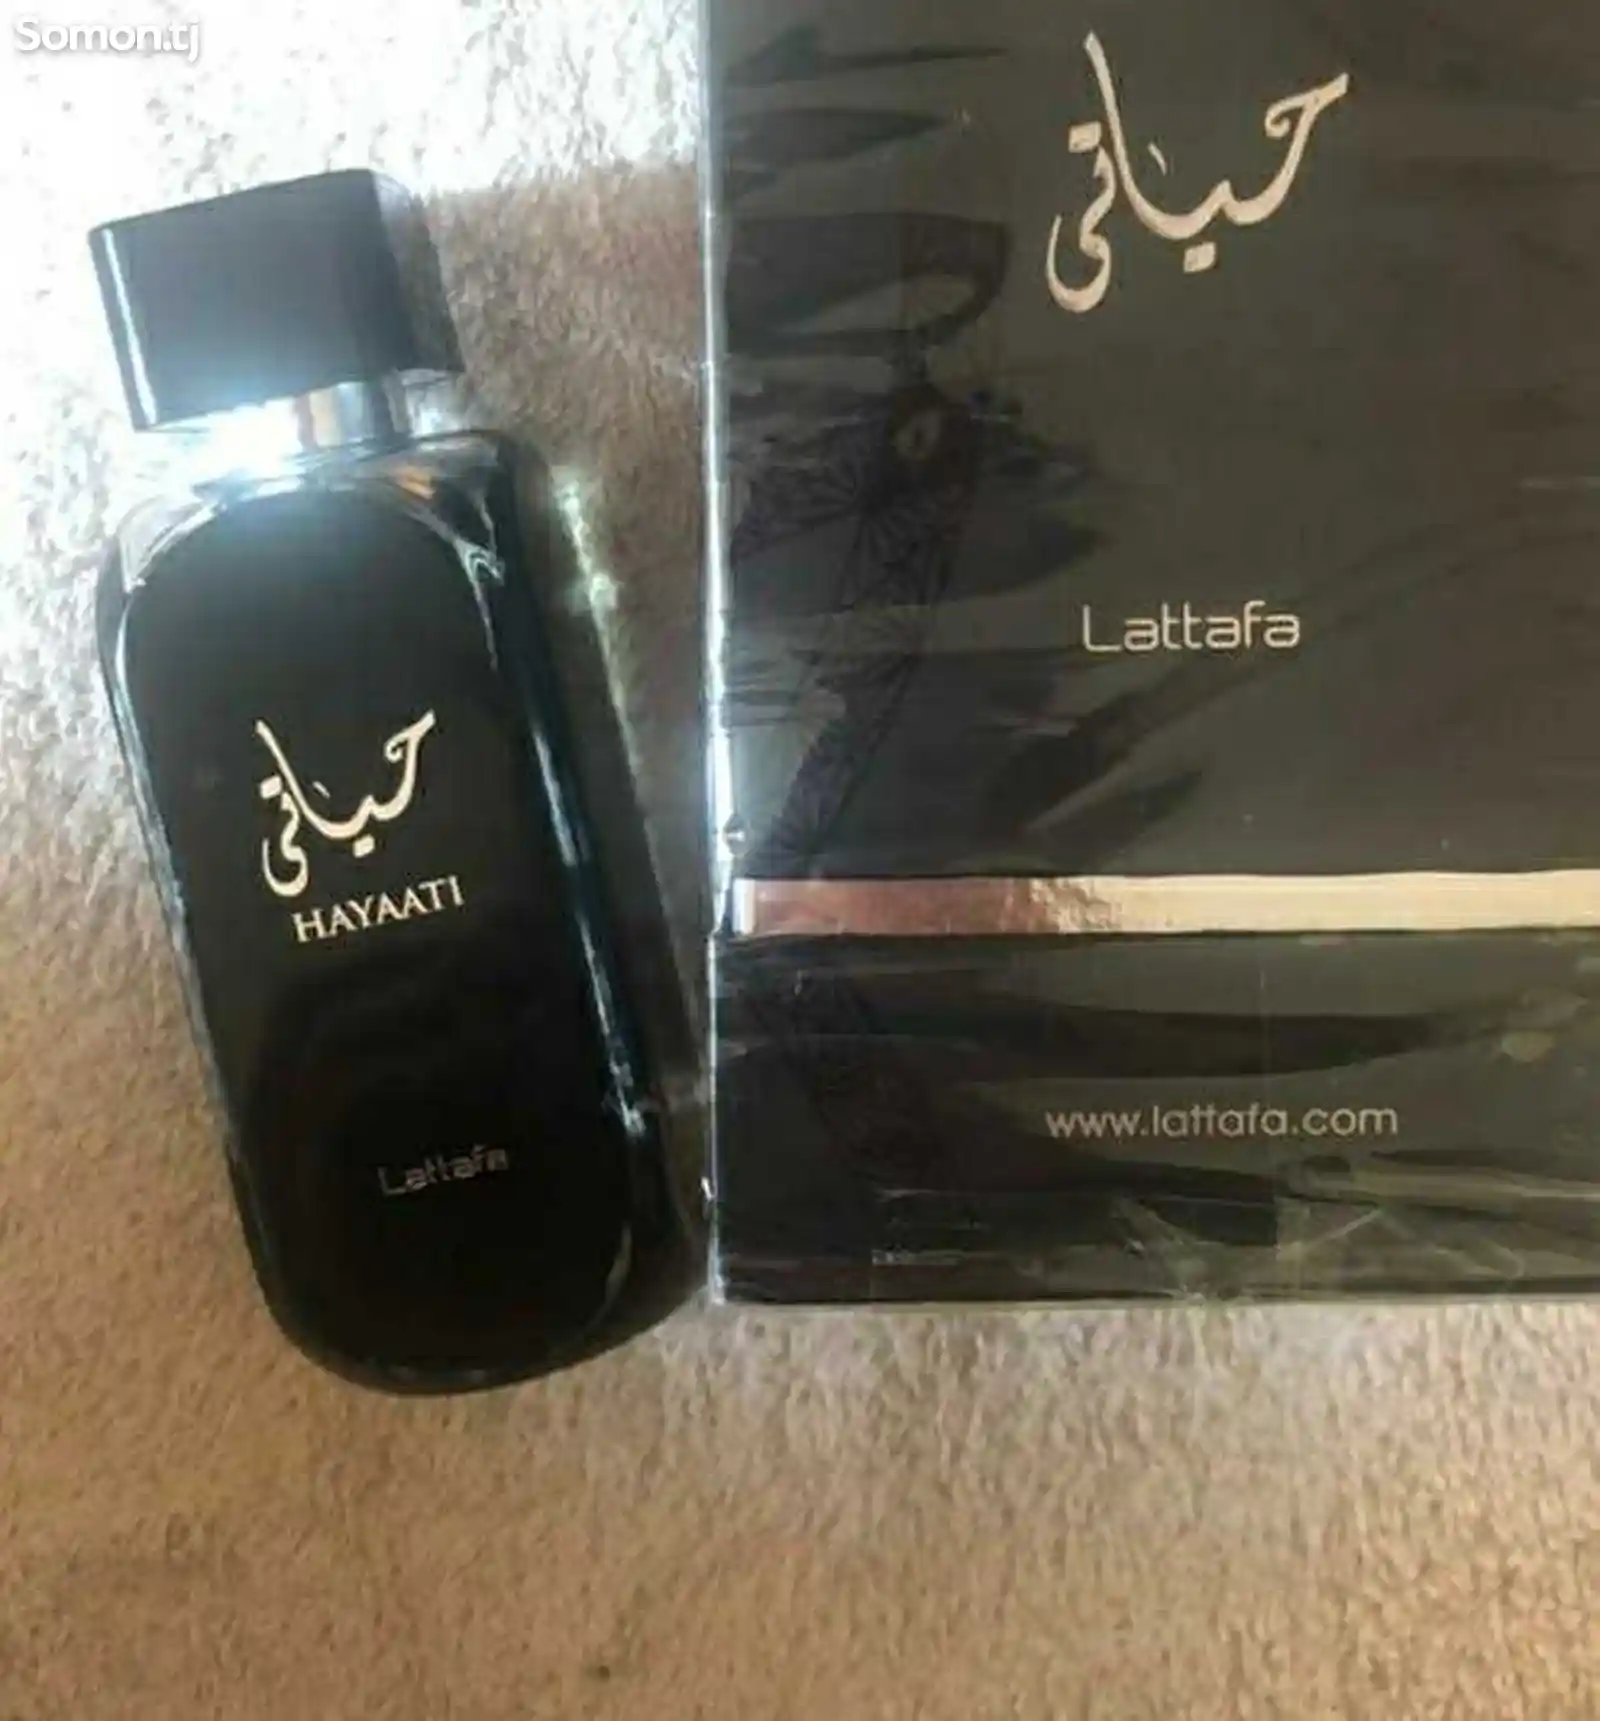 Мужской парфюм Hayaati Lattafa